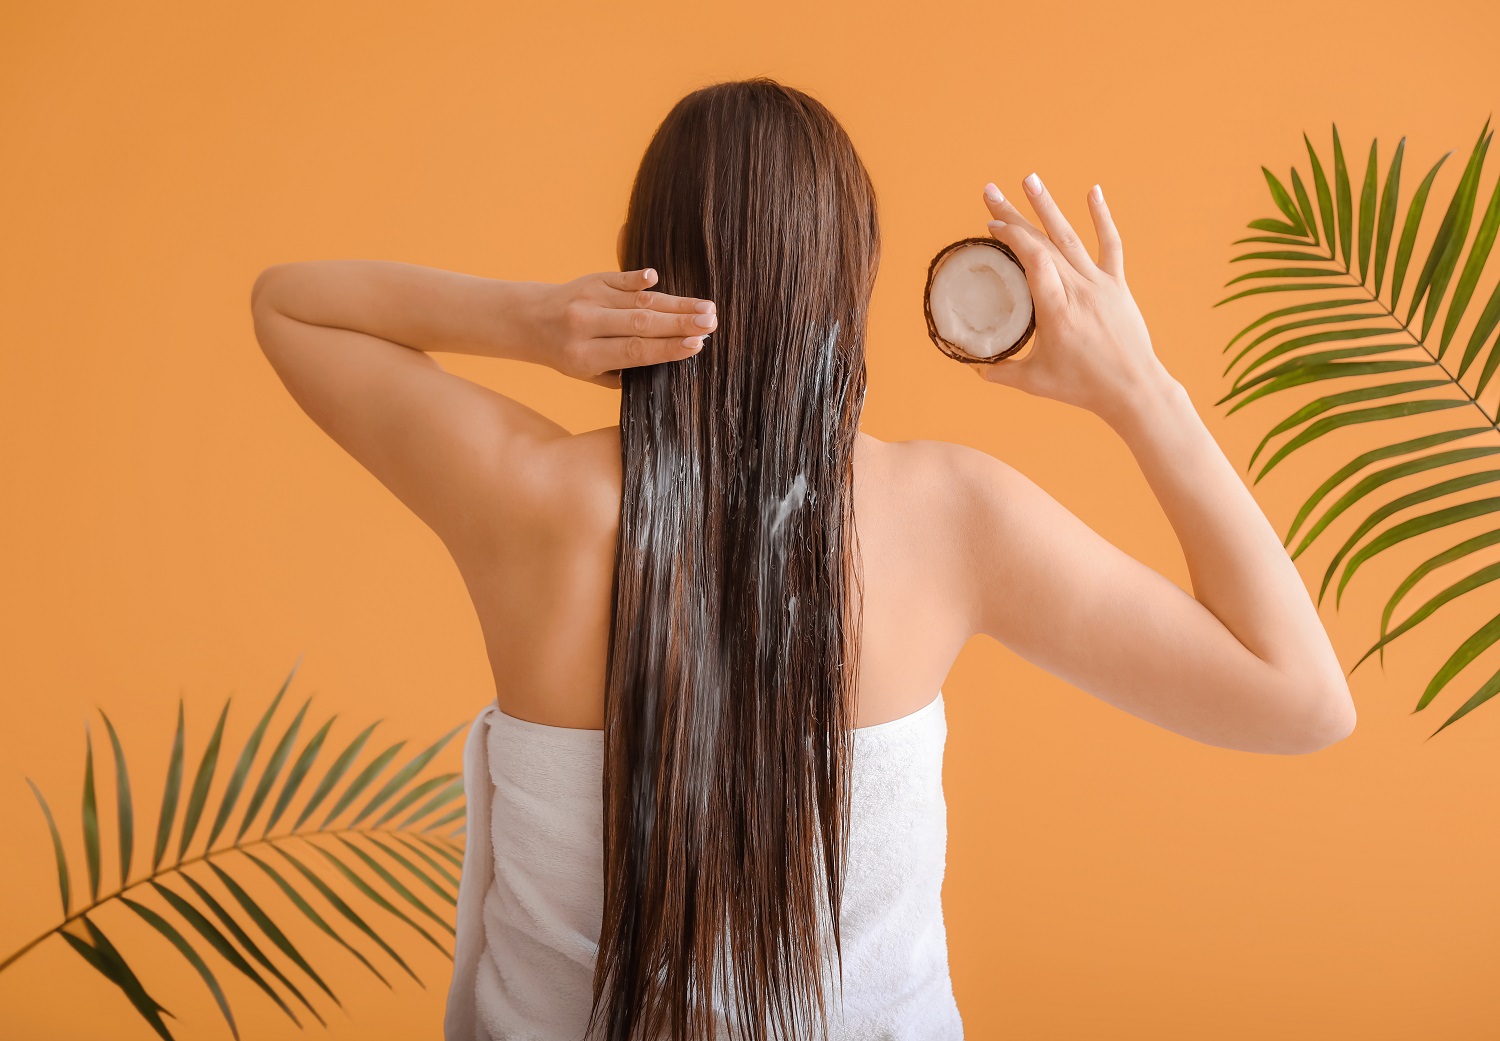 الدليل الشامل حول طرق تنعيم الشعر والحصول على خصلات سلسة وجذابة